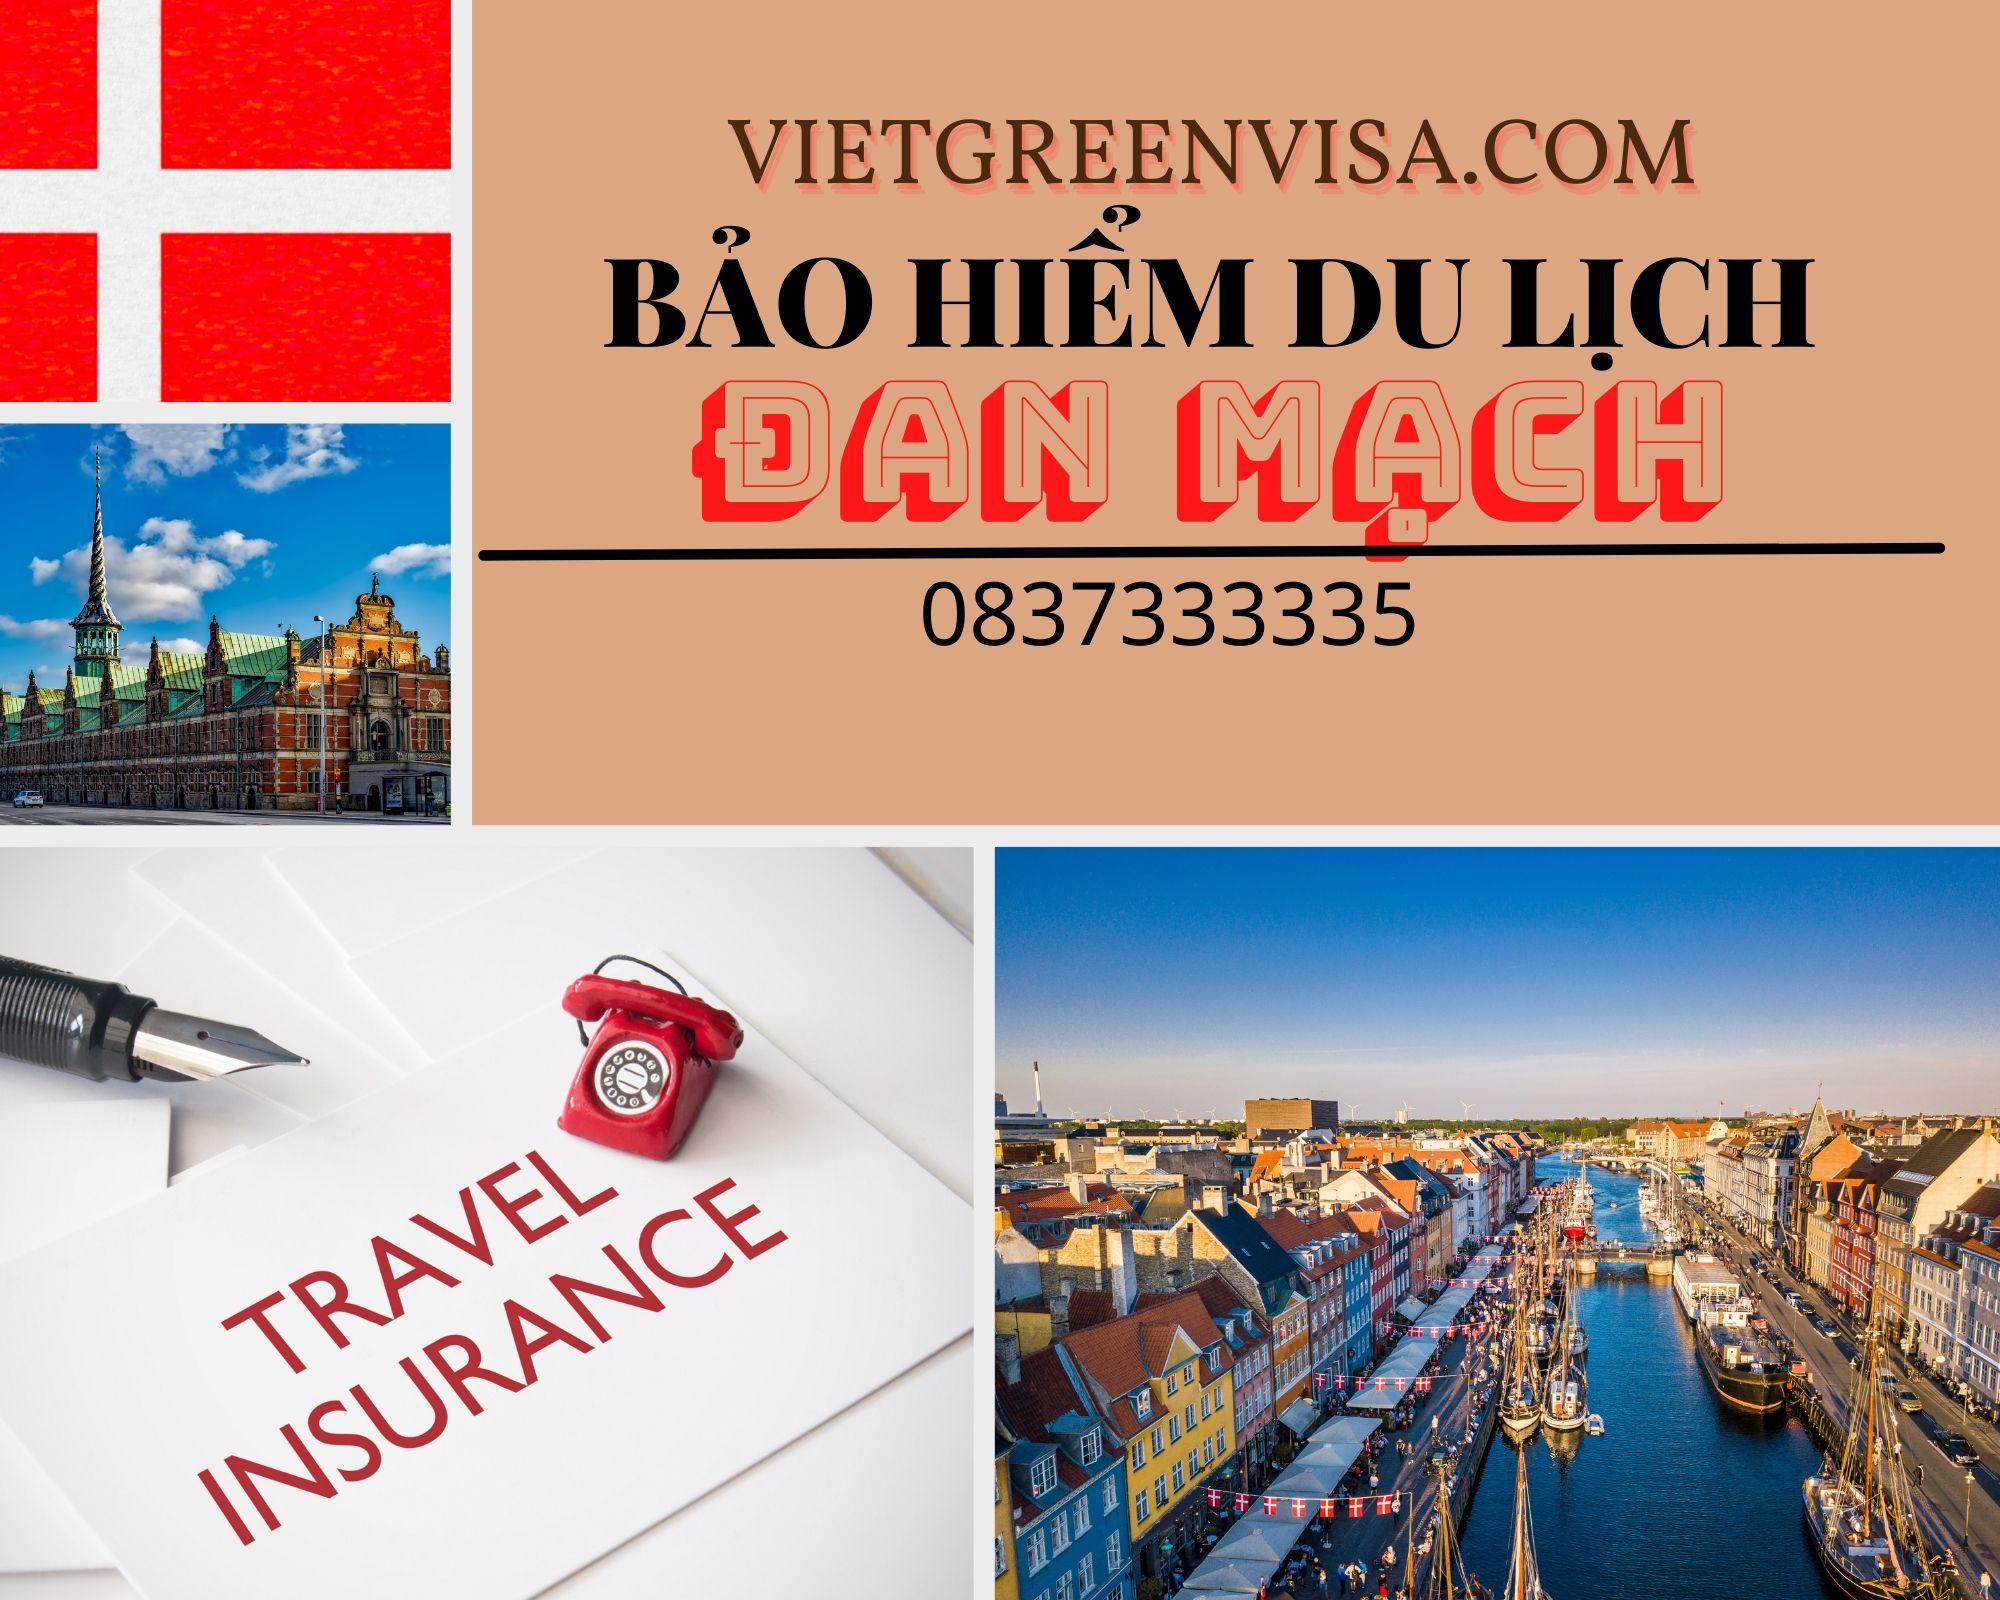 Đại lý bảo hiểm du lịch xin visa Đan Mạch giá rẻ nhất